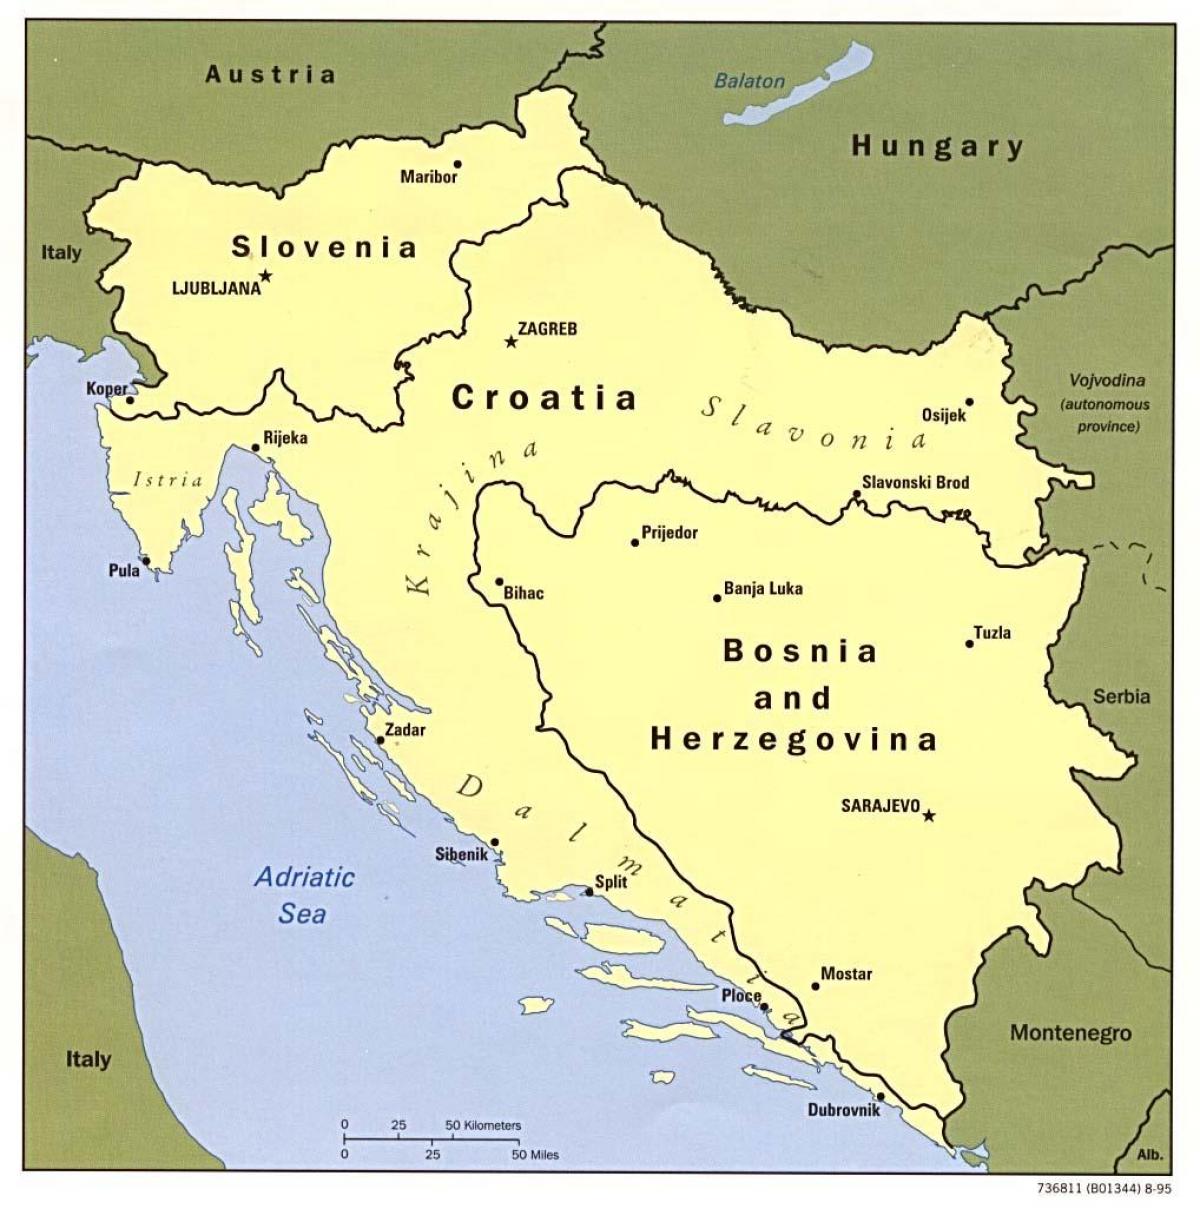 नक्शा बोस्निया और हर्जेगोविना के आसपास के देशों